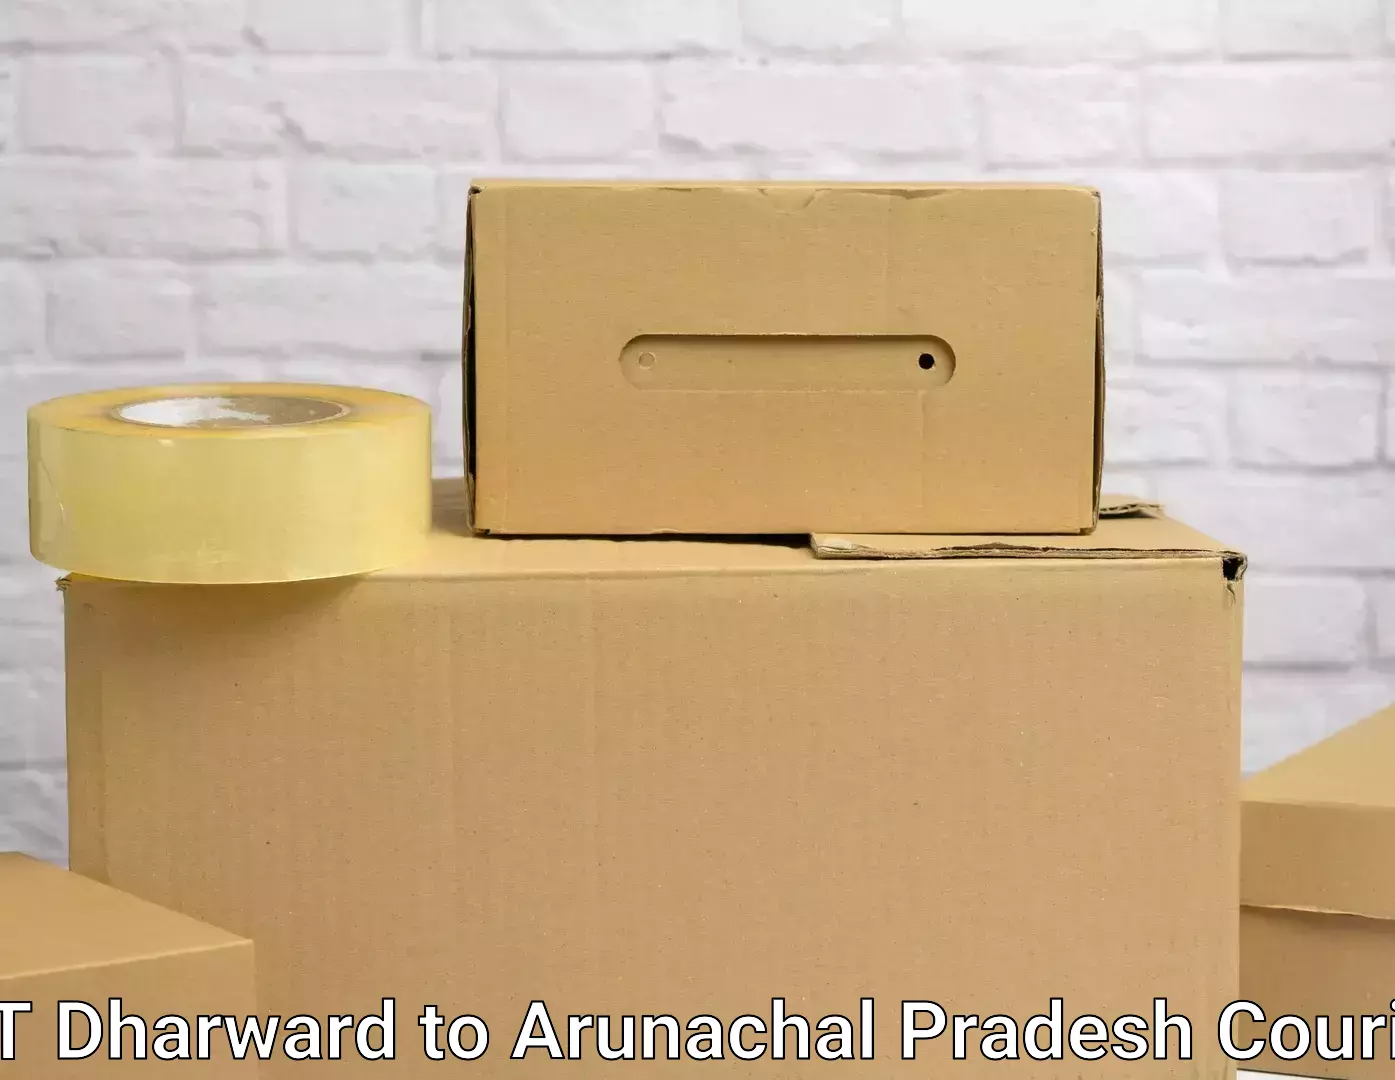 Trusted household movers in IIIT Dharward to Arunachal Pradesh